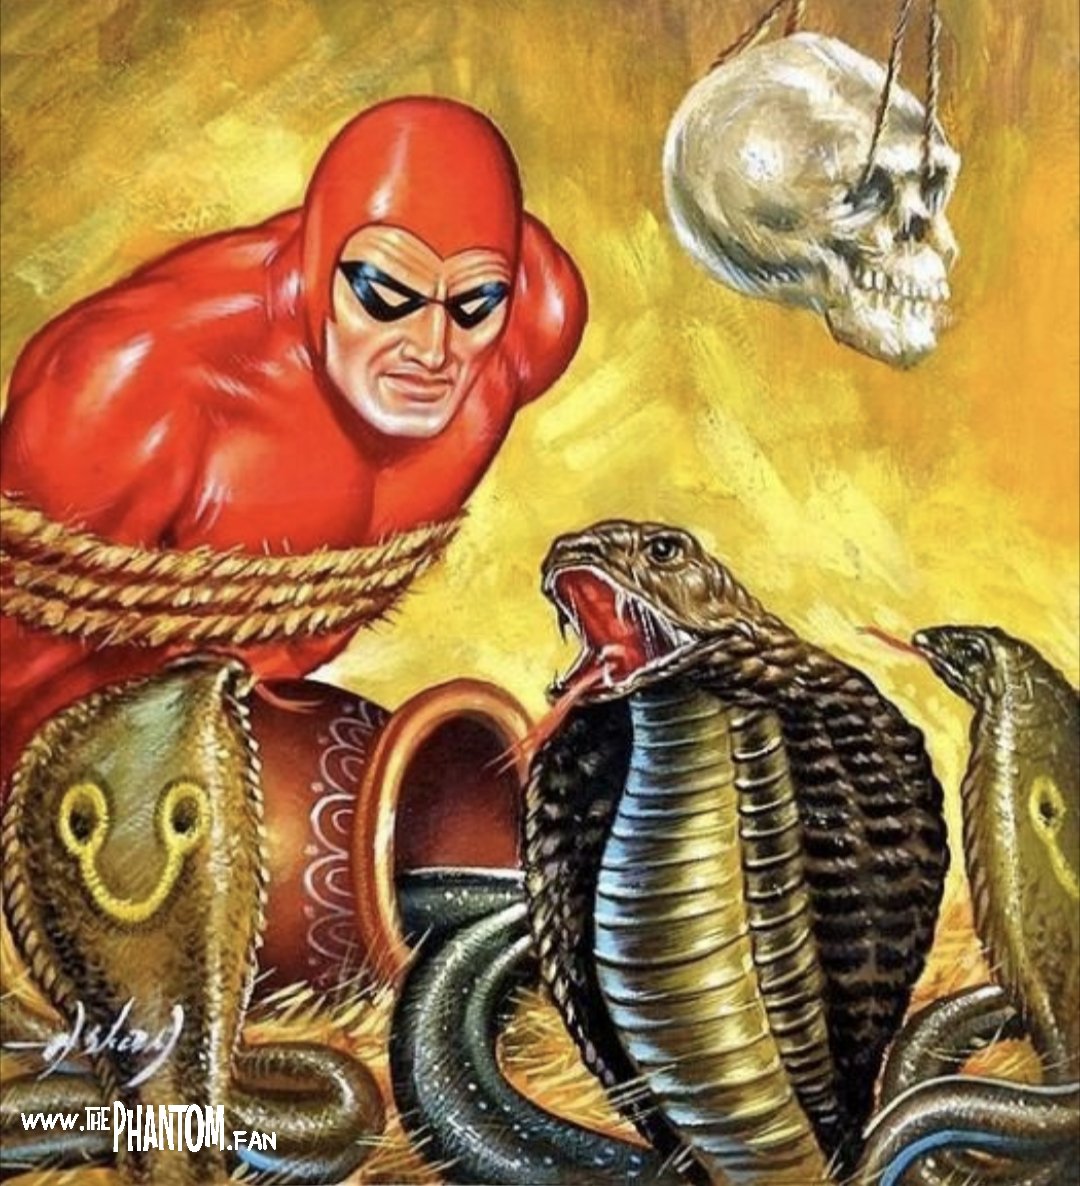 🎨 Aslan Sukur. #thephantom #comicbook #skull #cobra #snake